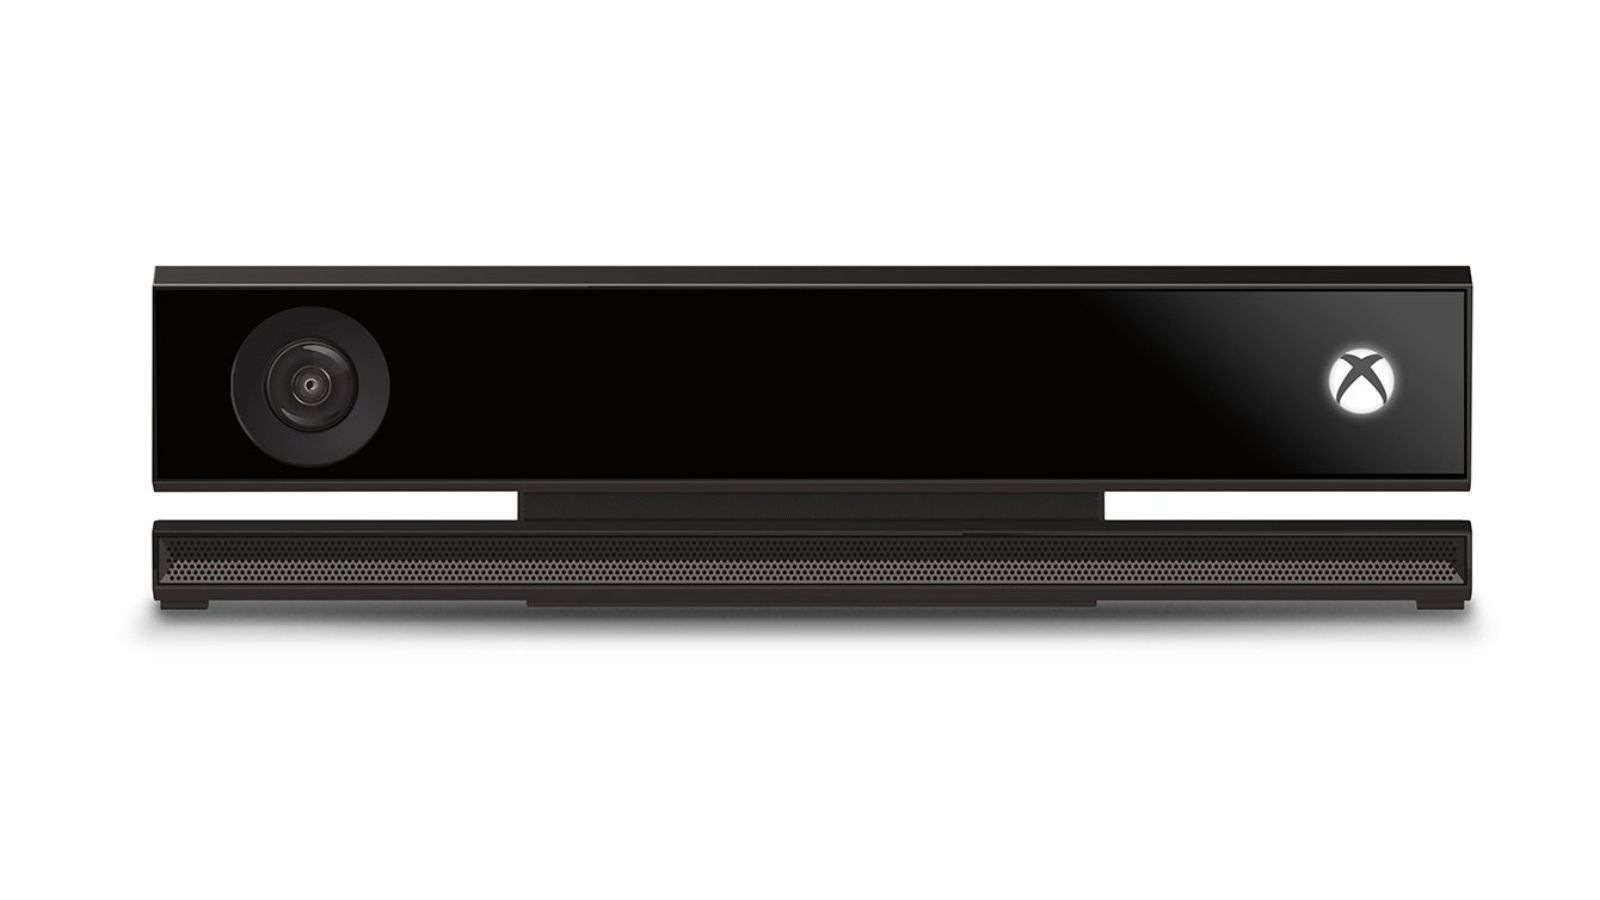 Xbox One Kinect sensor.